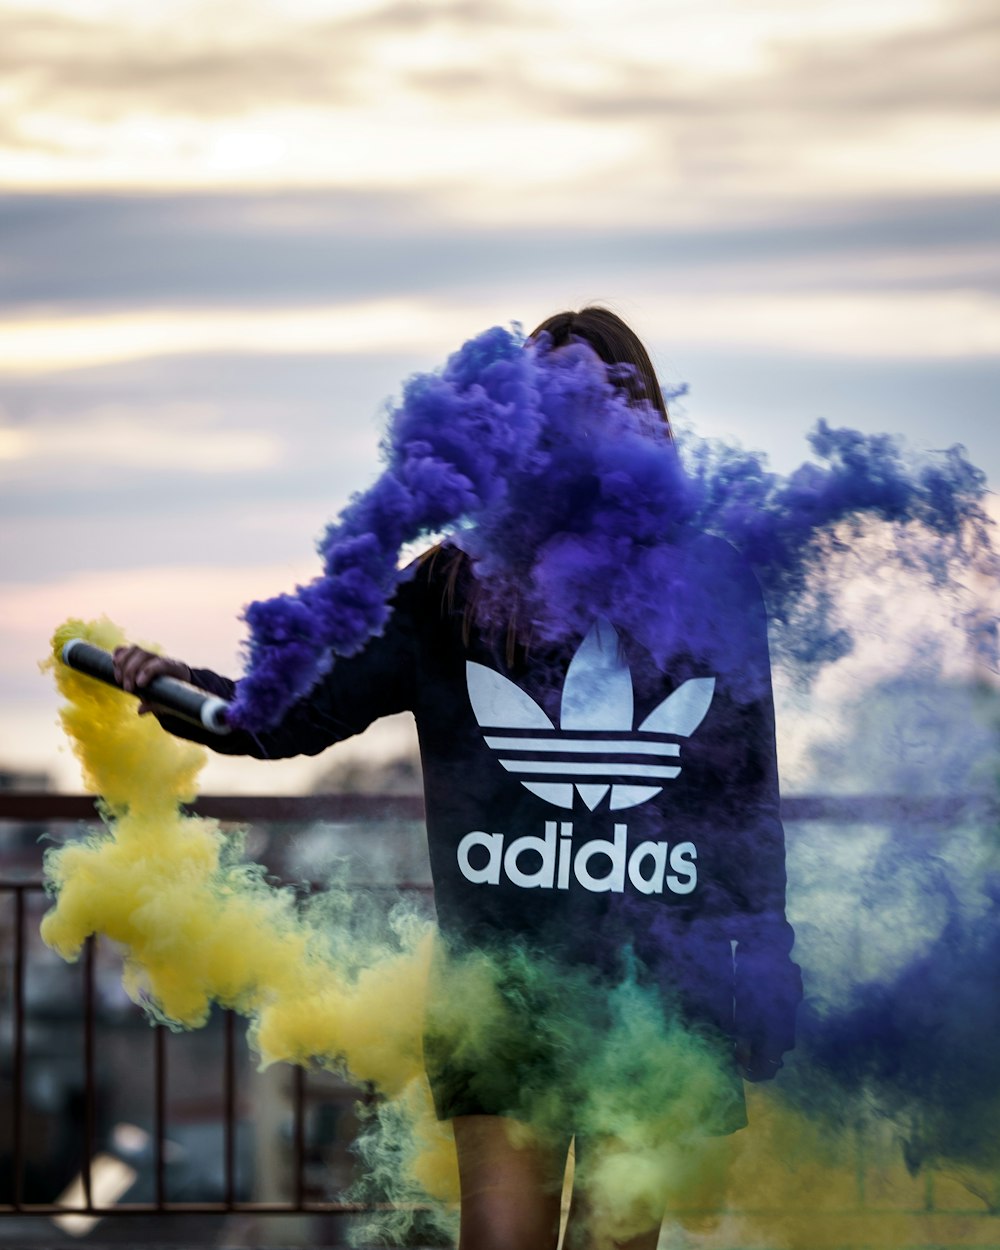 Más de 500 imágenes de Adidas | imágenes gratis en Unsplash